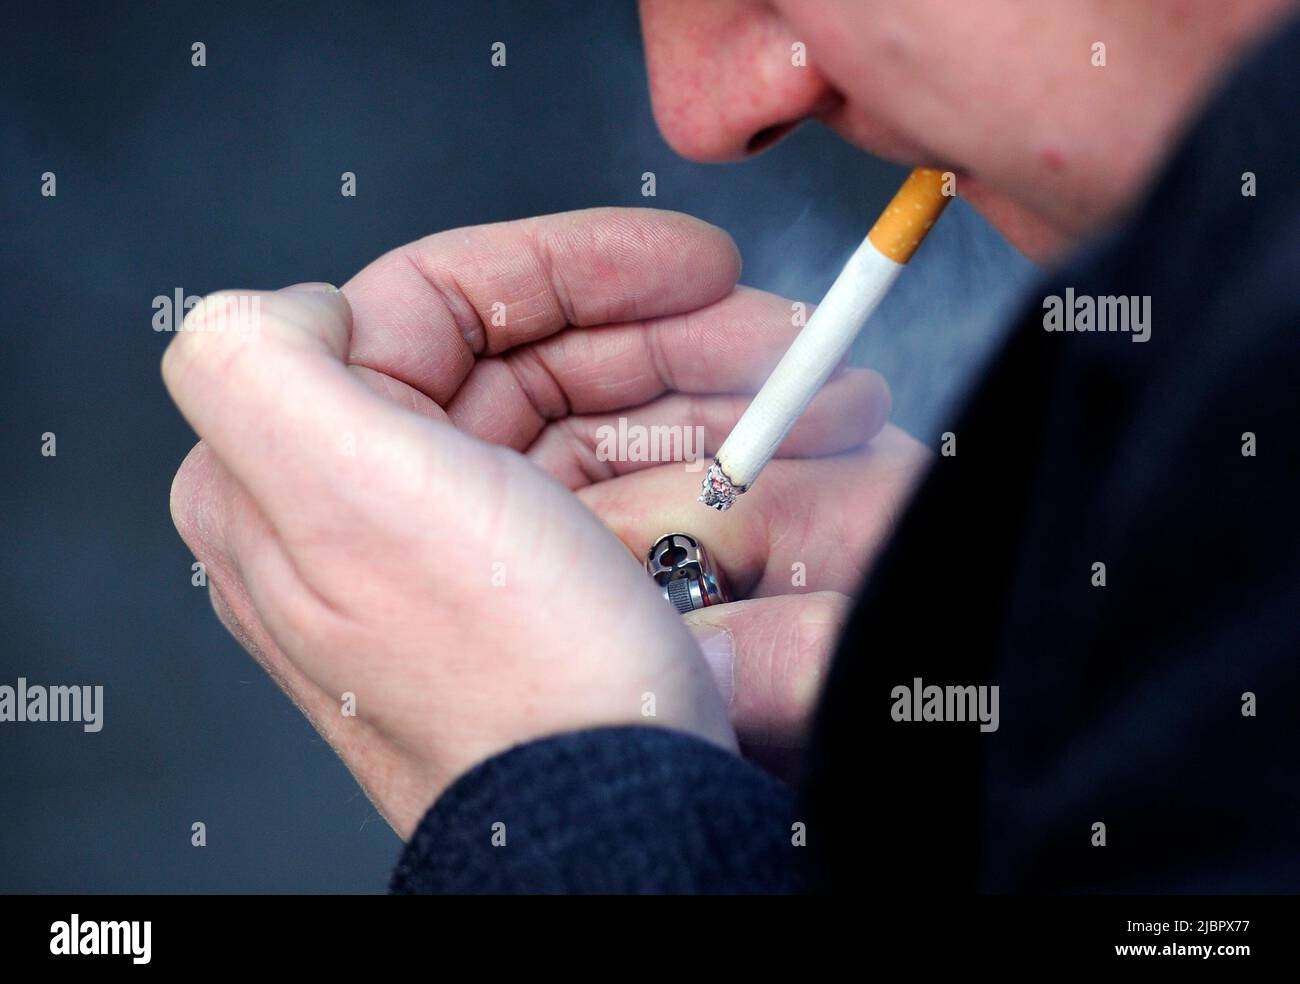 BILD POSIERTE MEIN Ein MODELL: Aktenfoto vom 12/03/13 eines Mannes, der eine Zigarette rauchte. Es muss mehr getan werden, um Rauchern im Krankenhaus dabei zu helfen, die Angewohnheit zu verringern. Eine neue Überprüfung ist zu dem Ergebnis gekommen, dass weniger als 1 % der Raucher es schaffen, nach einem Krankenhausaufenthalt aufzuhören. Ausgabedatum: Mittwoch, 8. Juni 2022. Stockfoto